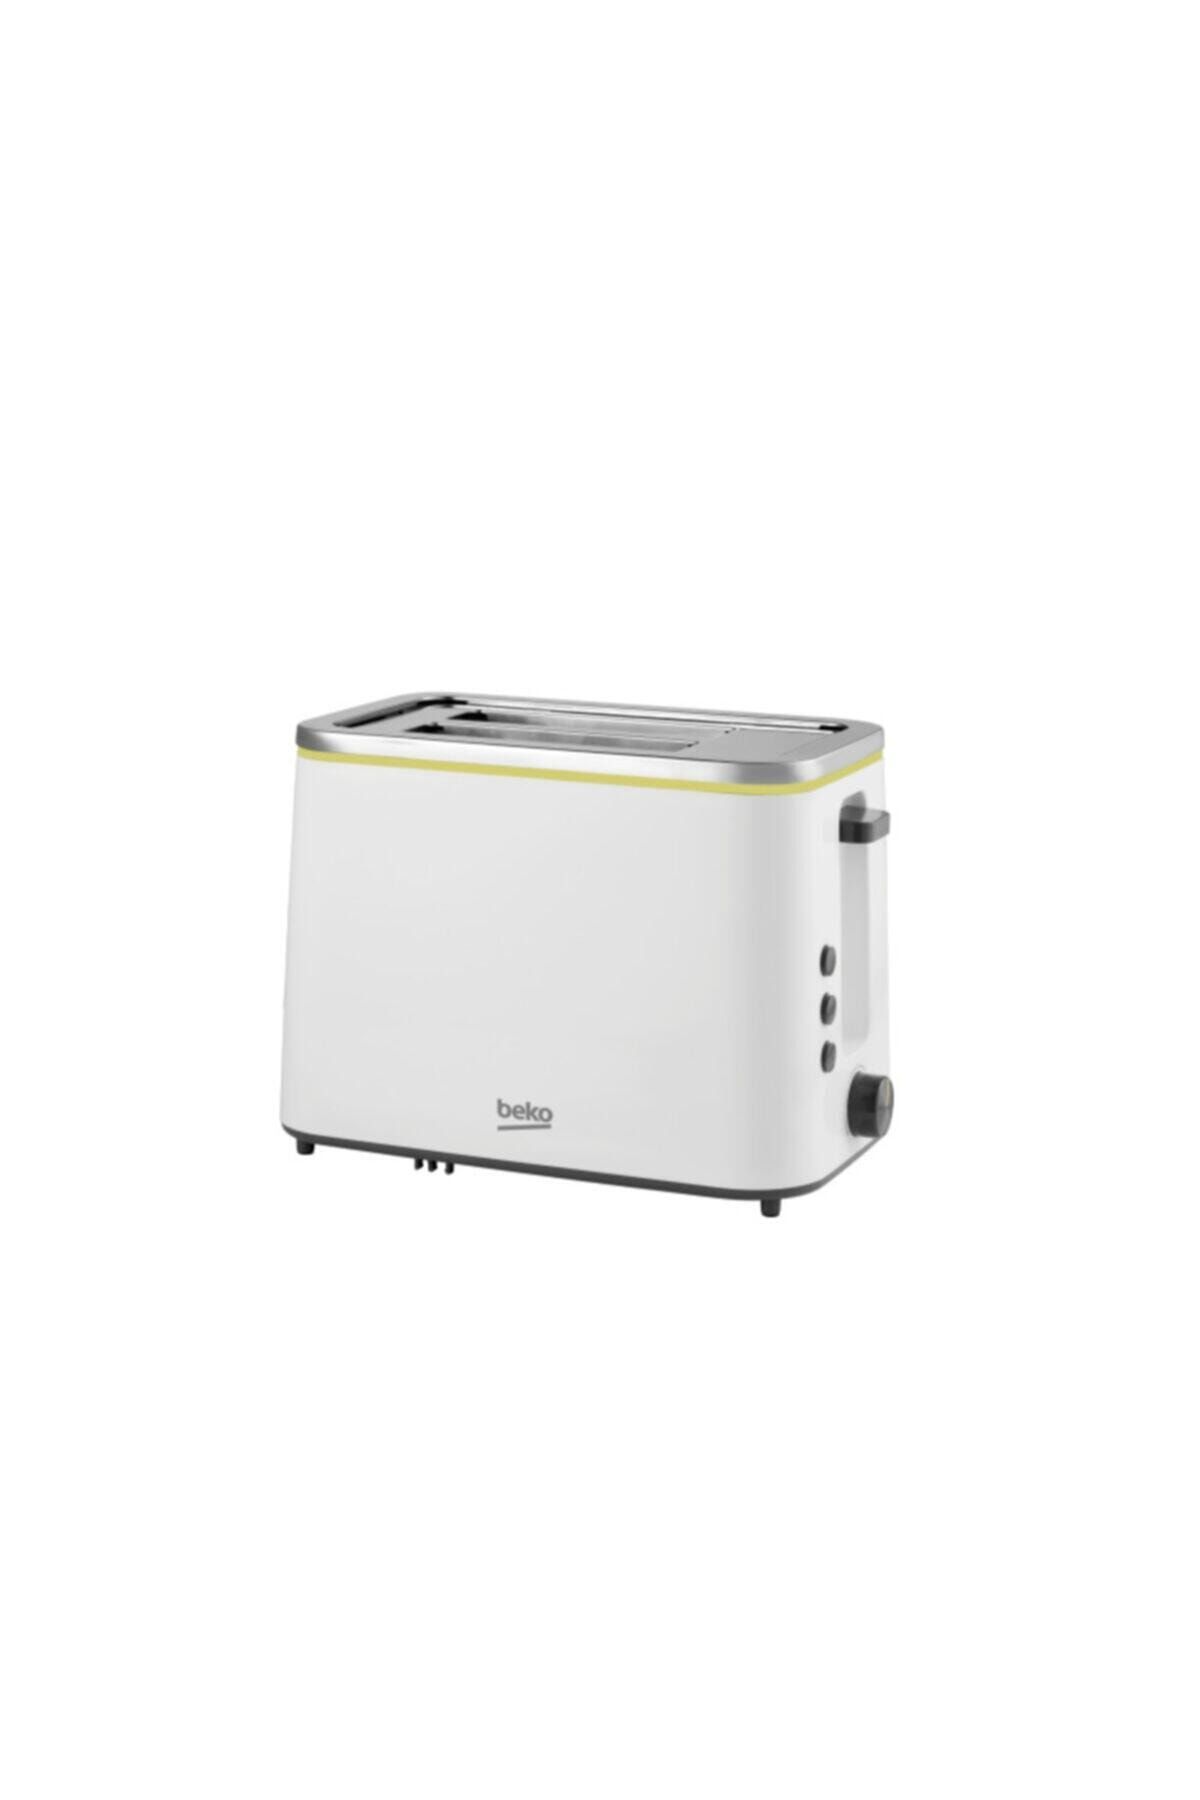 Beko Beyaz Ek 5920 800 W Ekmek Kızartma Makinası